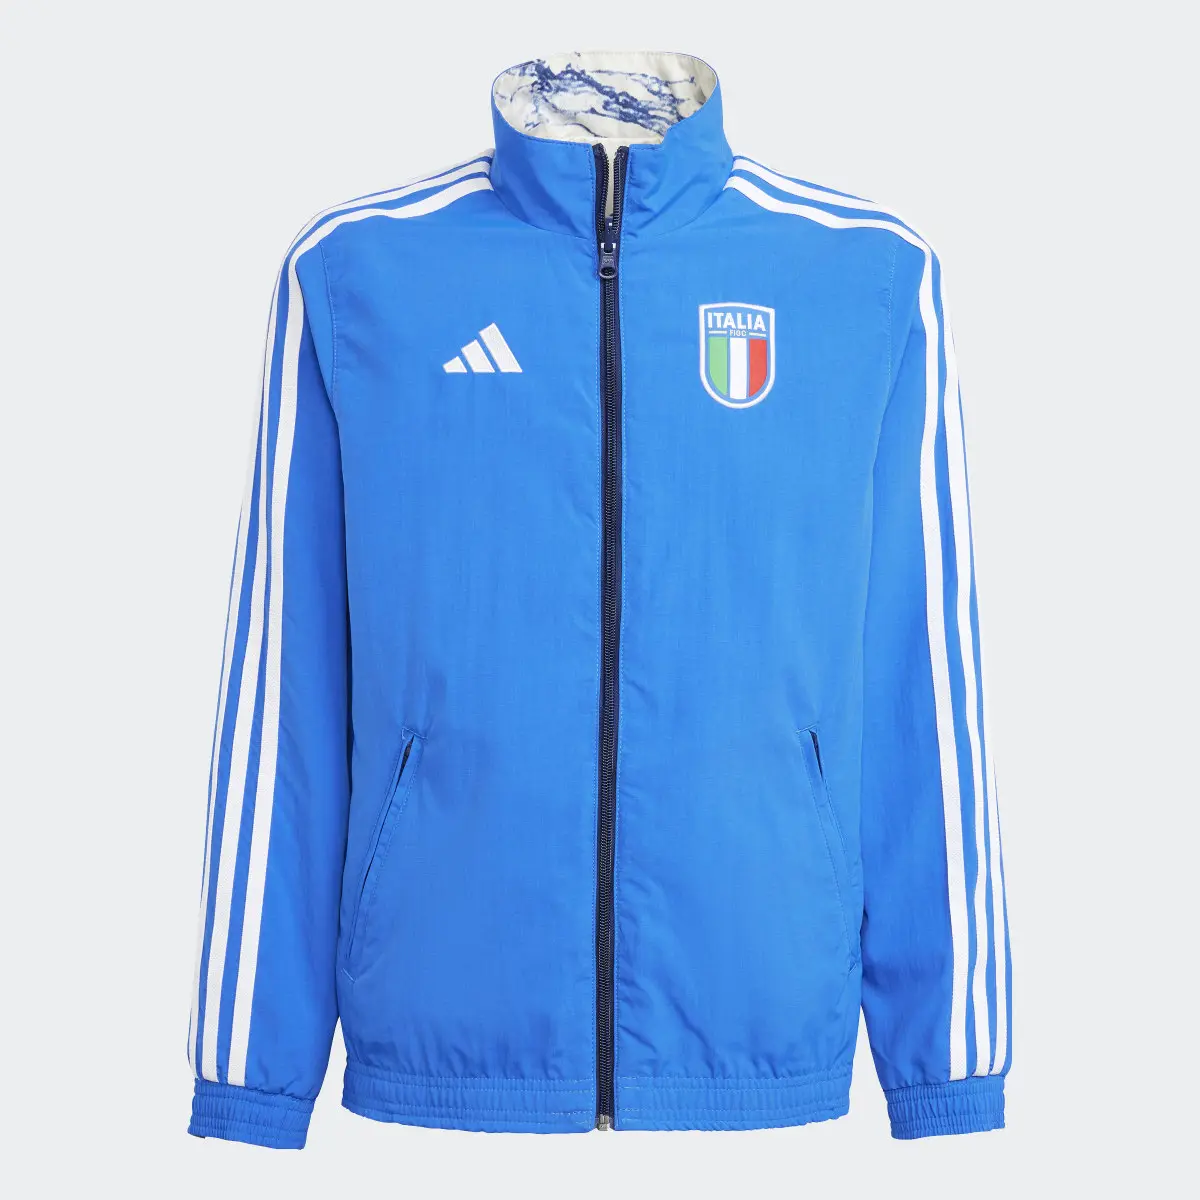 Adidas Italy Anthem Jacket. 3